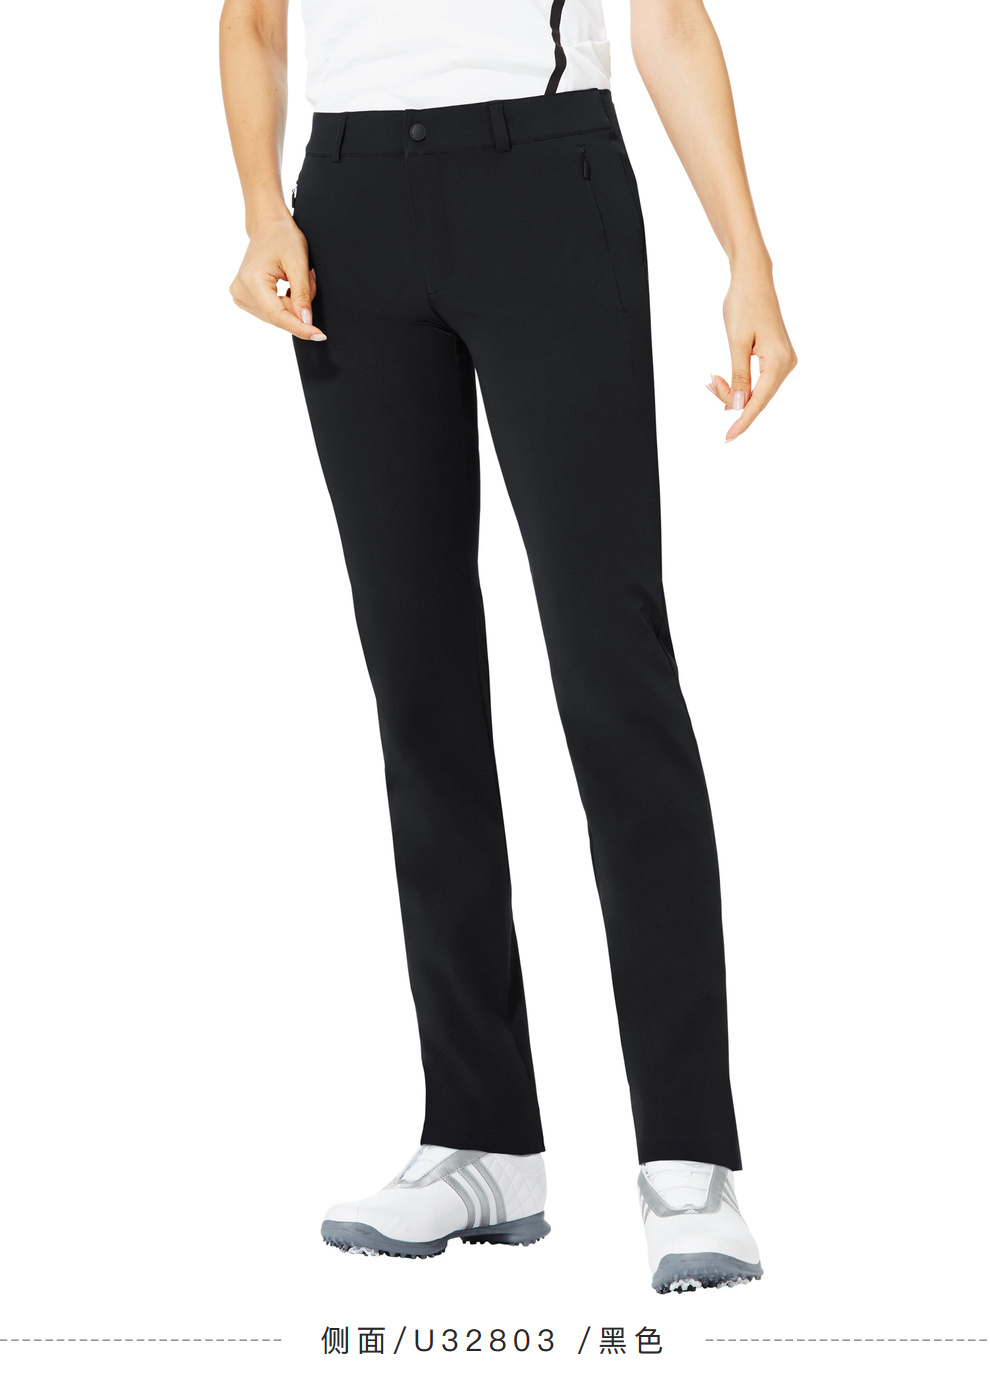 【新款】Taylormade泰勒梅高尔夫服装女士golf运动舒适长裤U32803